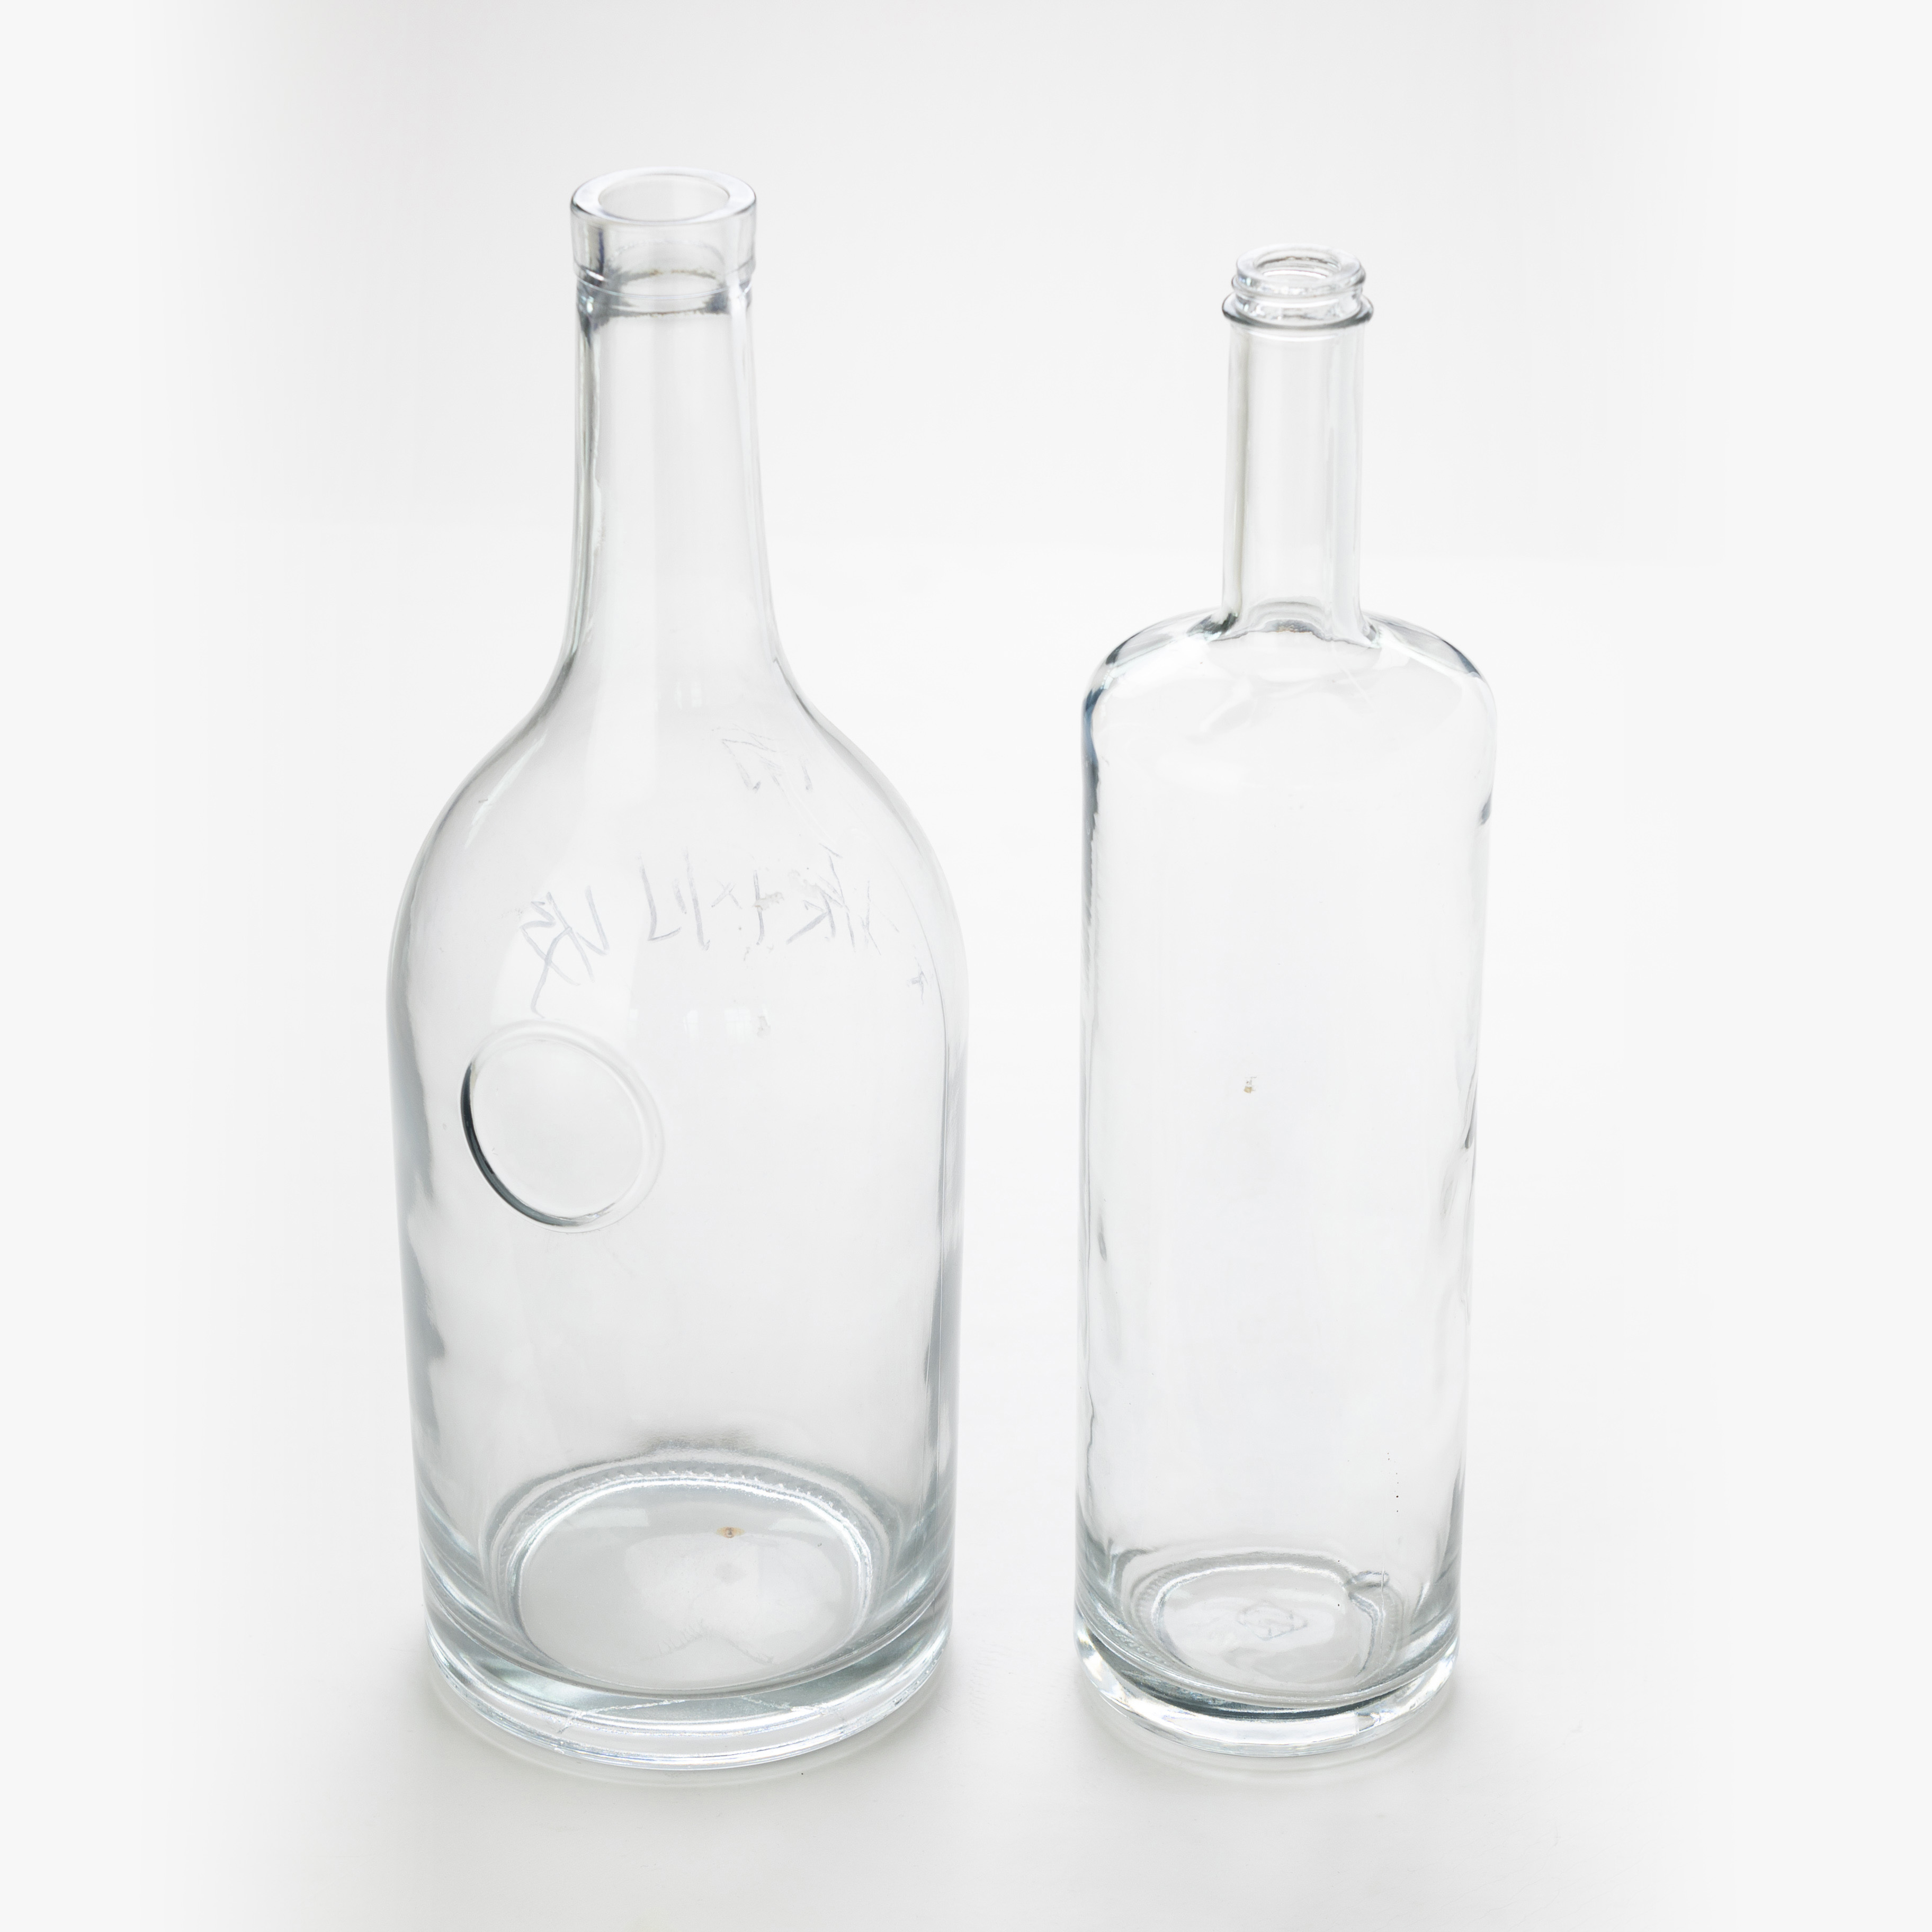 Botol kaca siprits bentuk yang berbeza